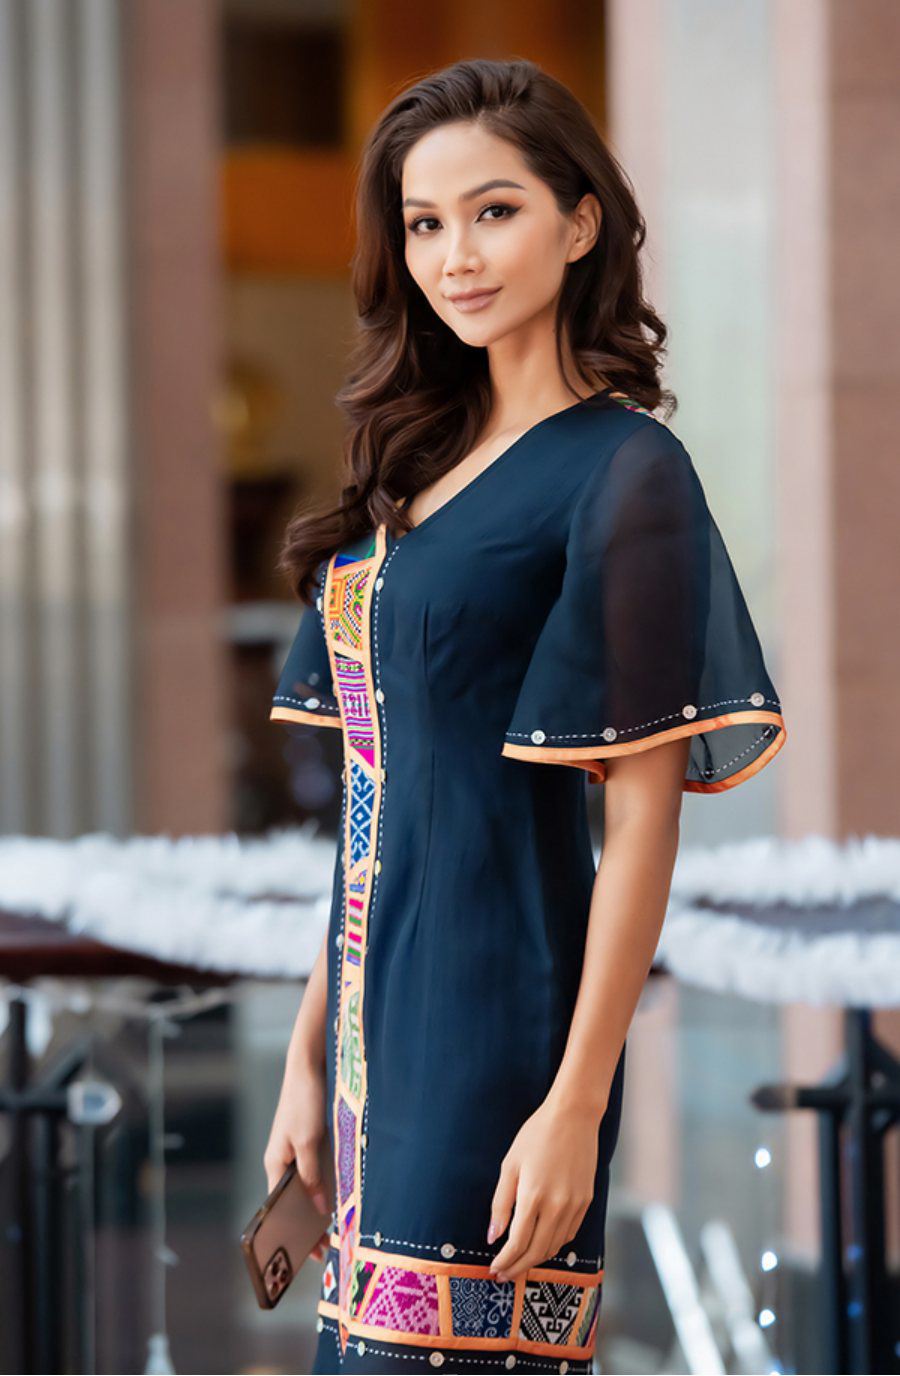 amp;#34;Tiểu vũ trụamp;#34; Miss Universe Vietnam tranh thủ chăm da, làm náo loạn cả sân bay Dubai - 1